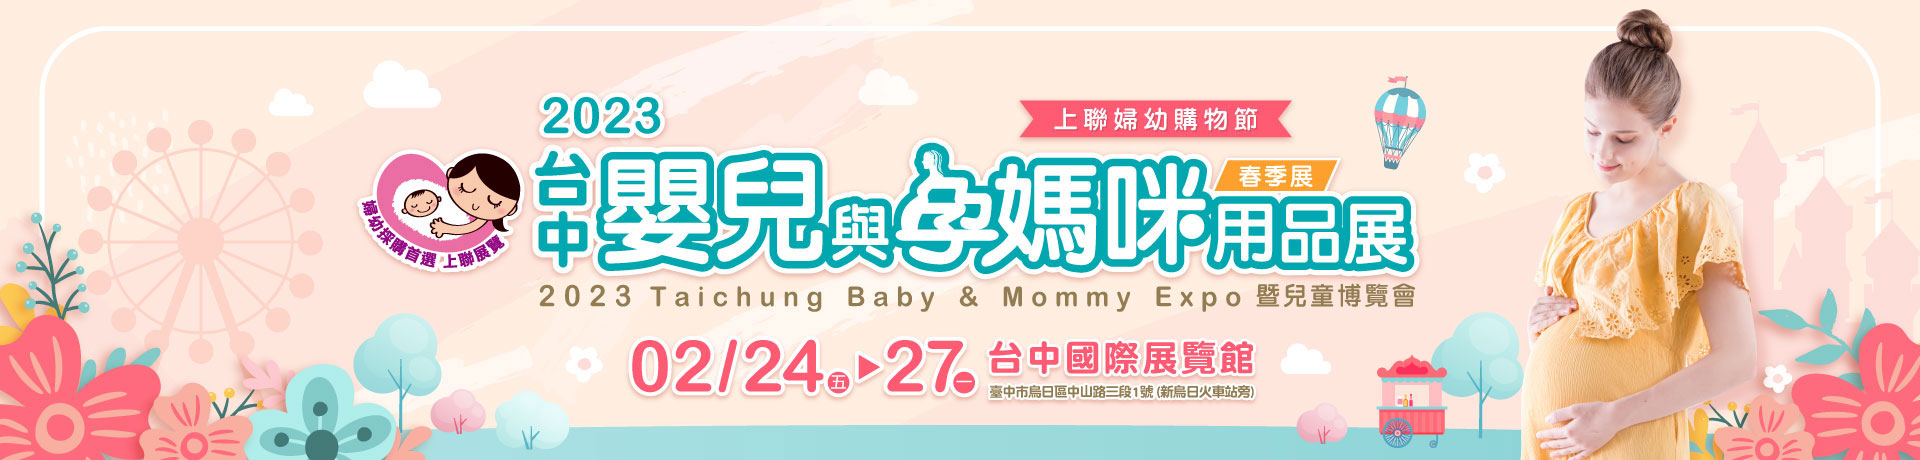 2023台中嬰兒與孕媽咪用品展暨兒童博覽會(春季展)